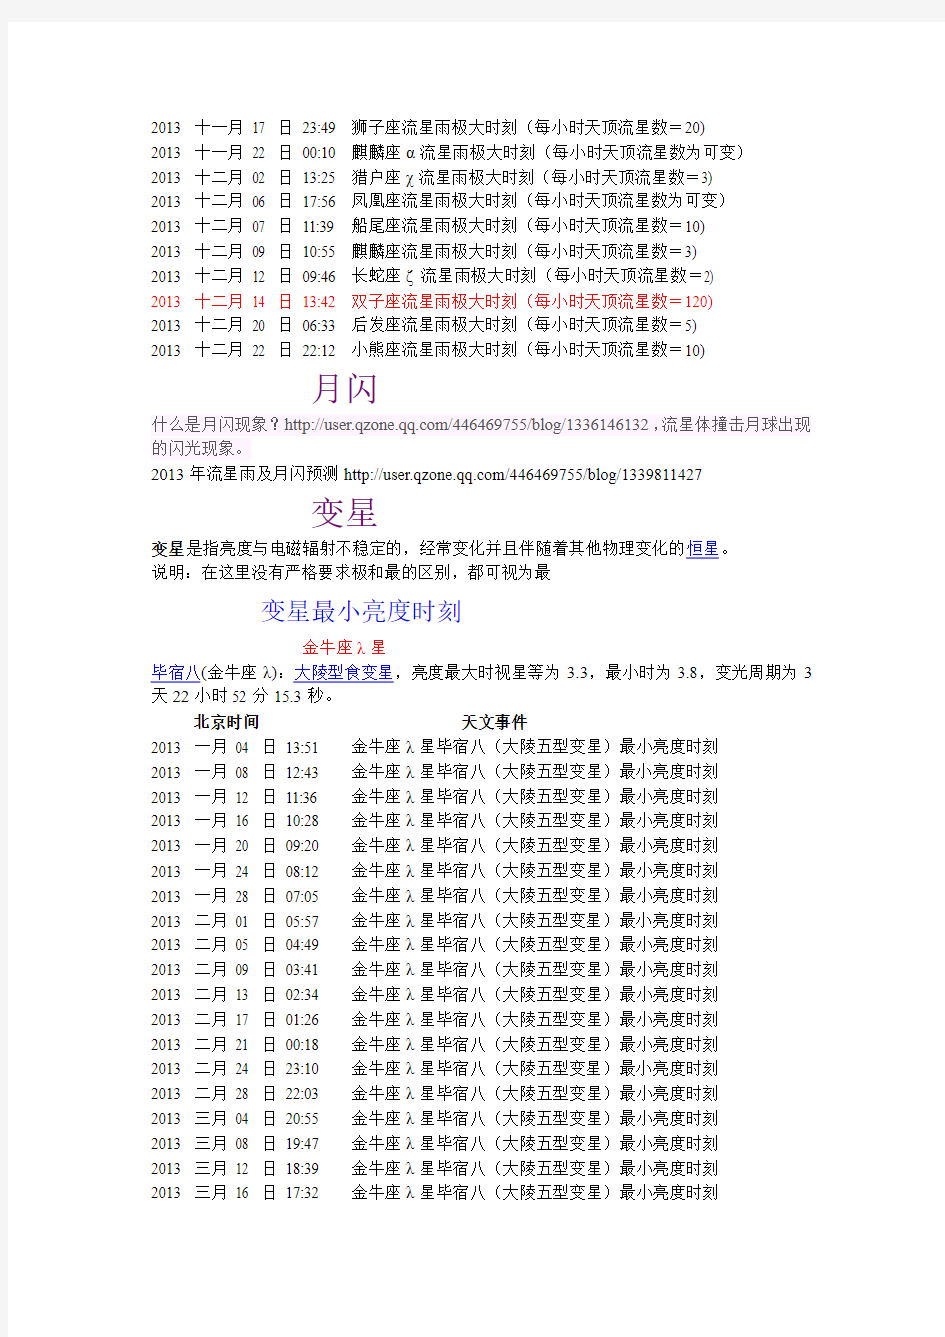 2013年天象日历大全分类版